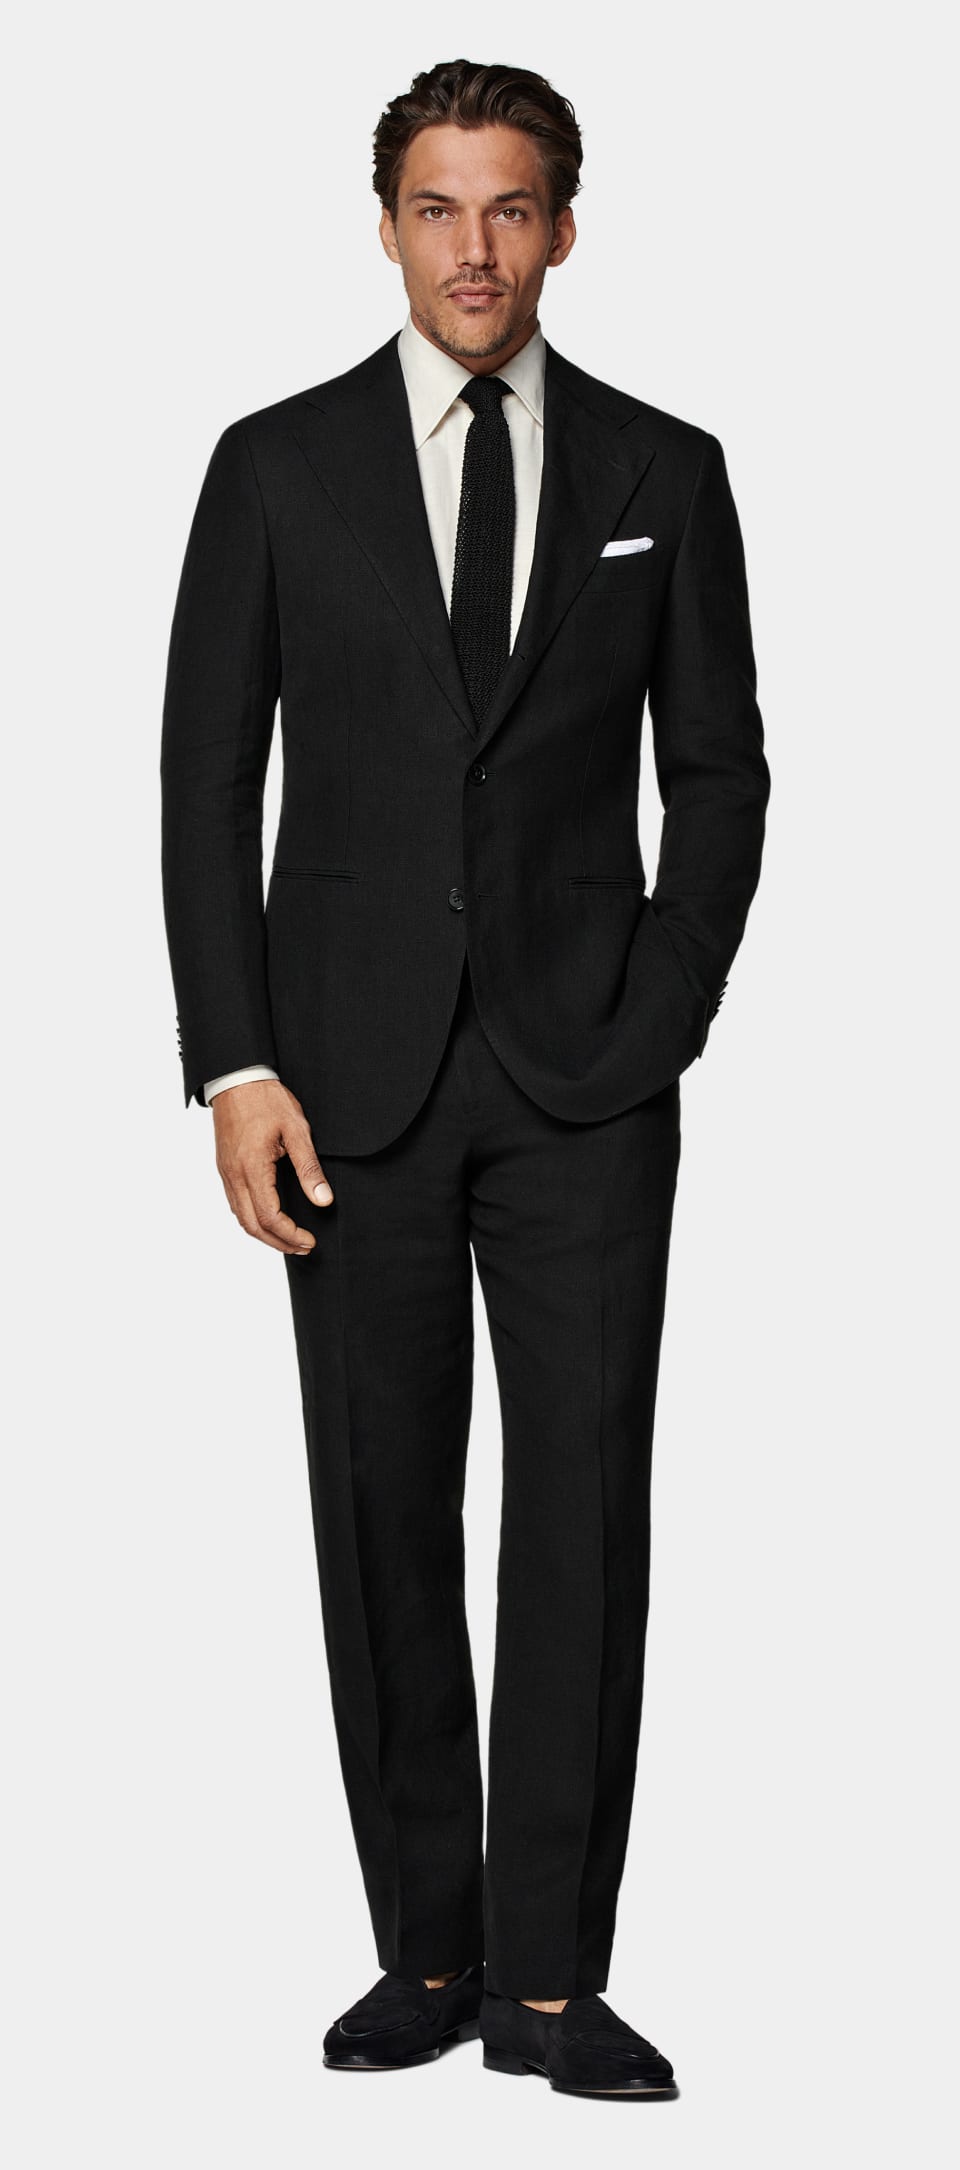 Shop the suit